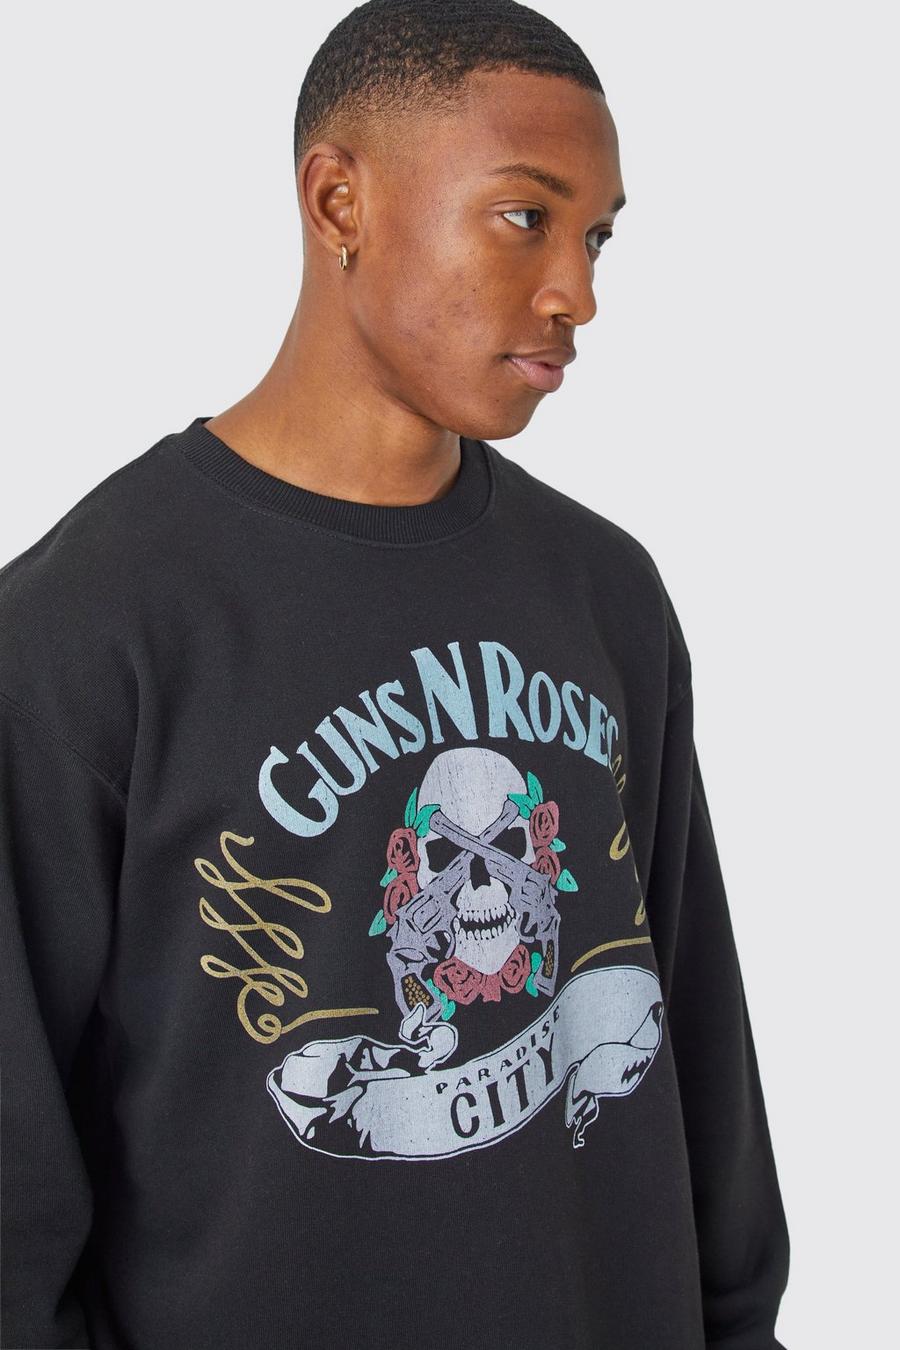 Black Oversized Guns N Roses Skull City License Shirtshirt